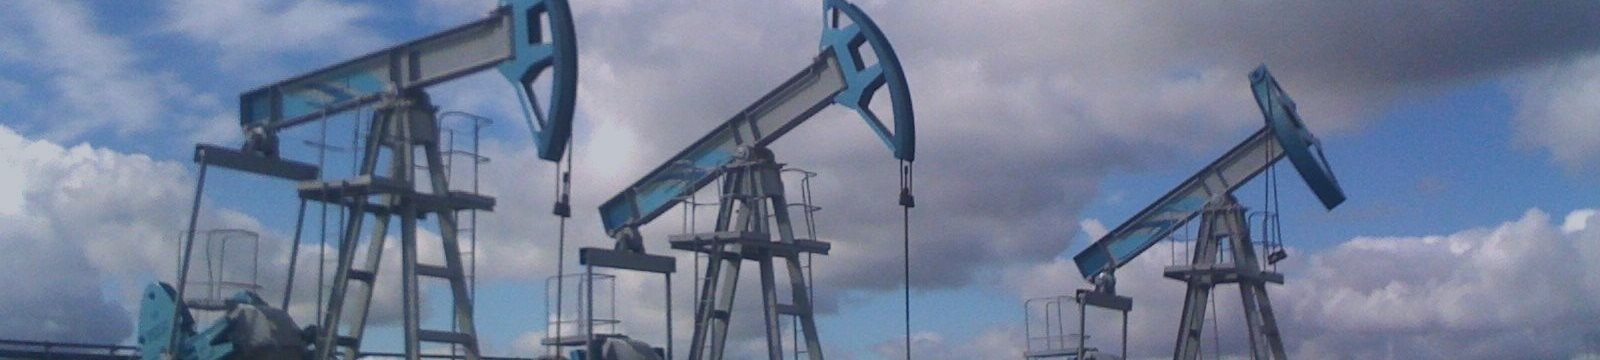 ОПЕК не собирается менять добычу нефти